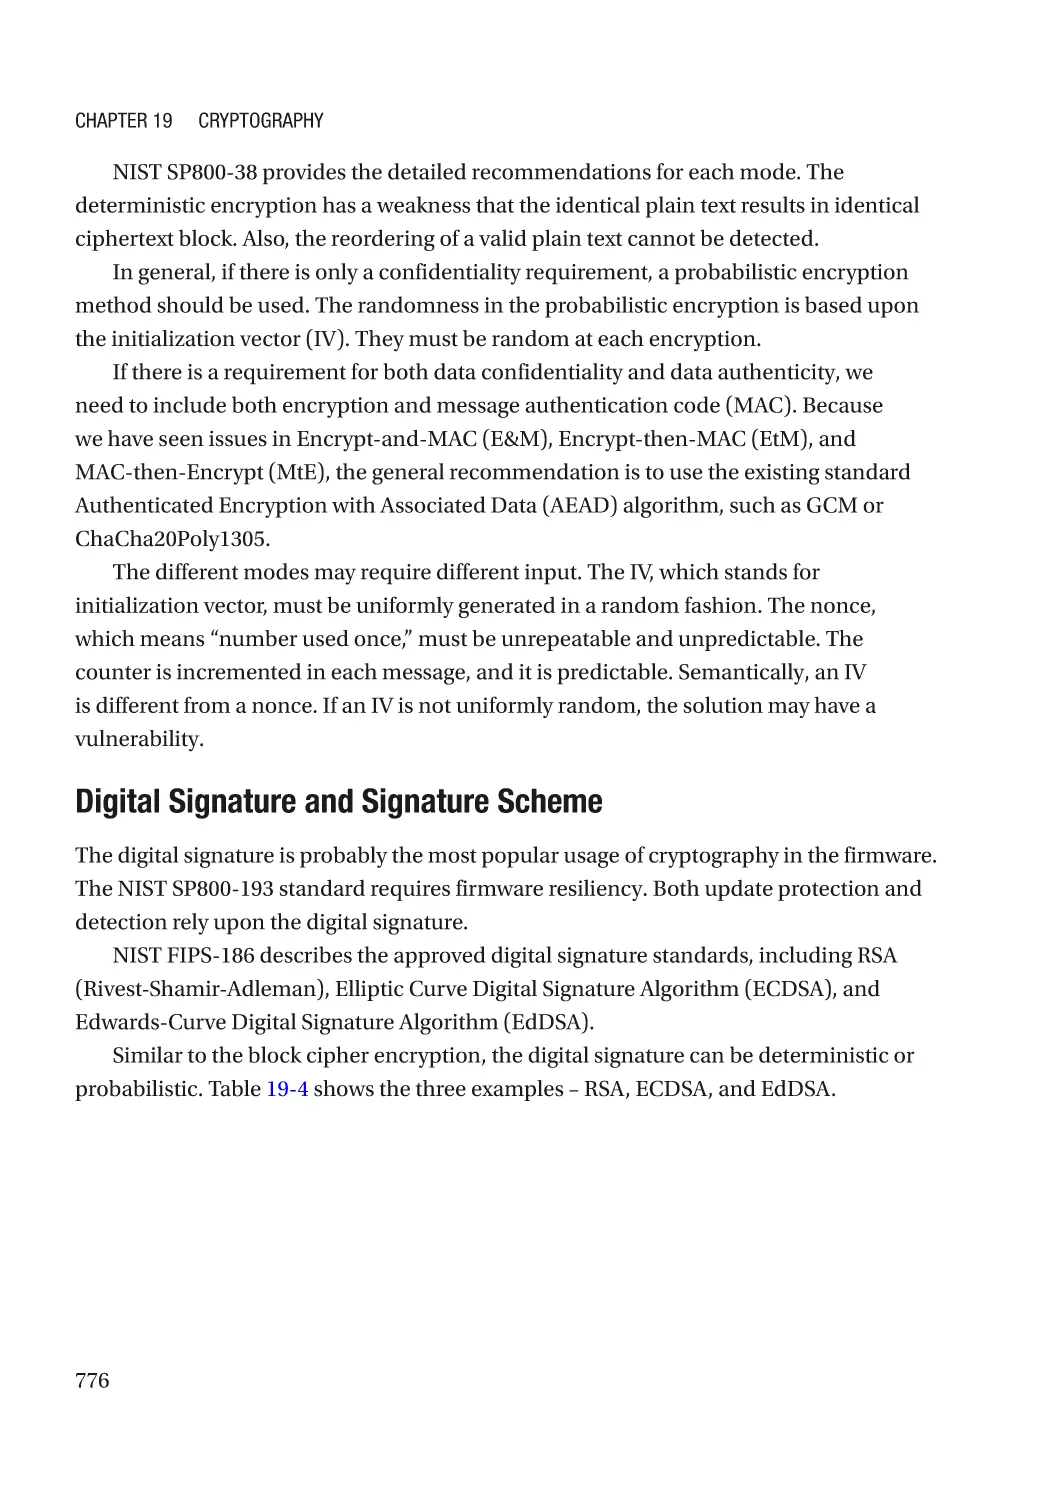 Digital Signature and Signature Scheme